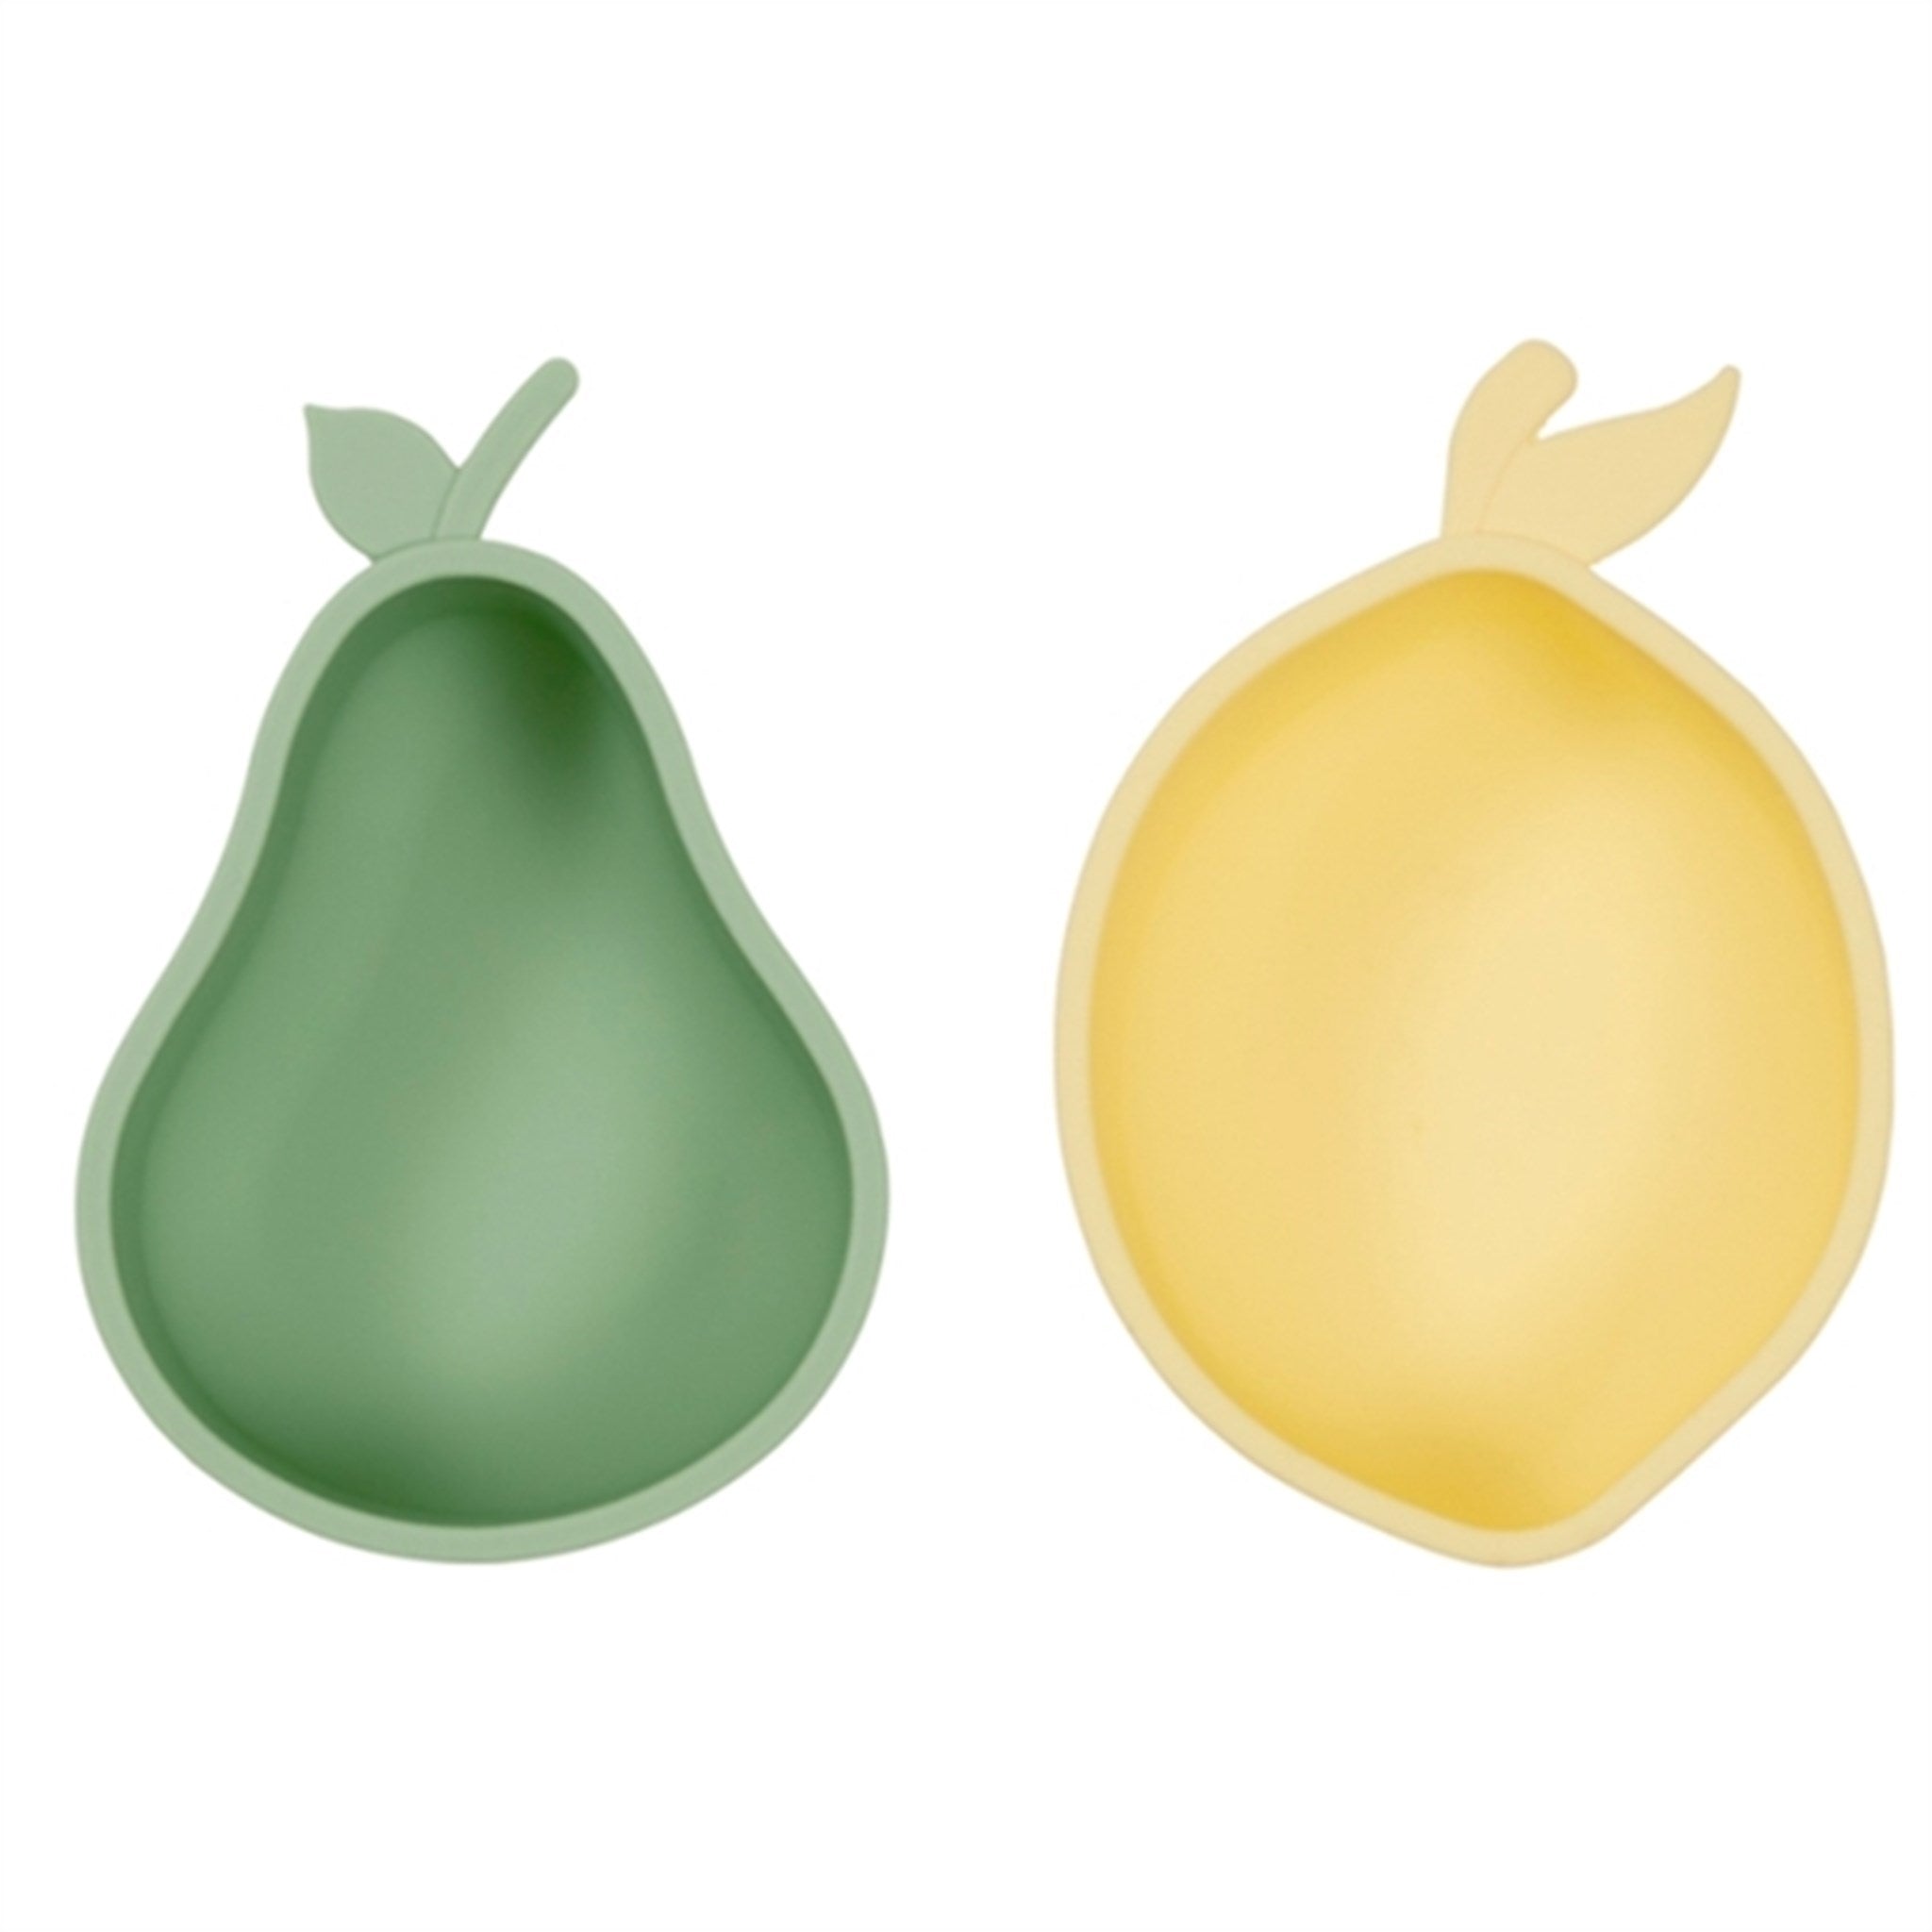 OYOY Yummy Snack Bowls Lemon & Pear Yellow/Green